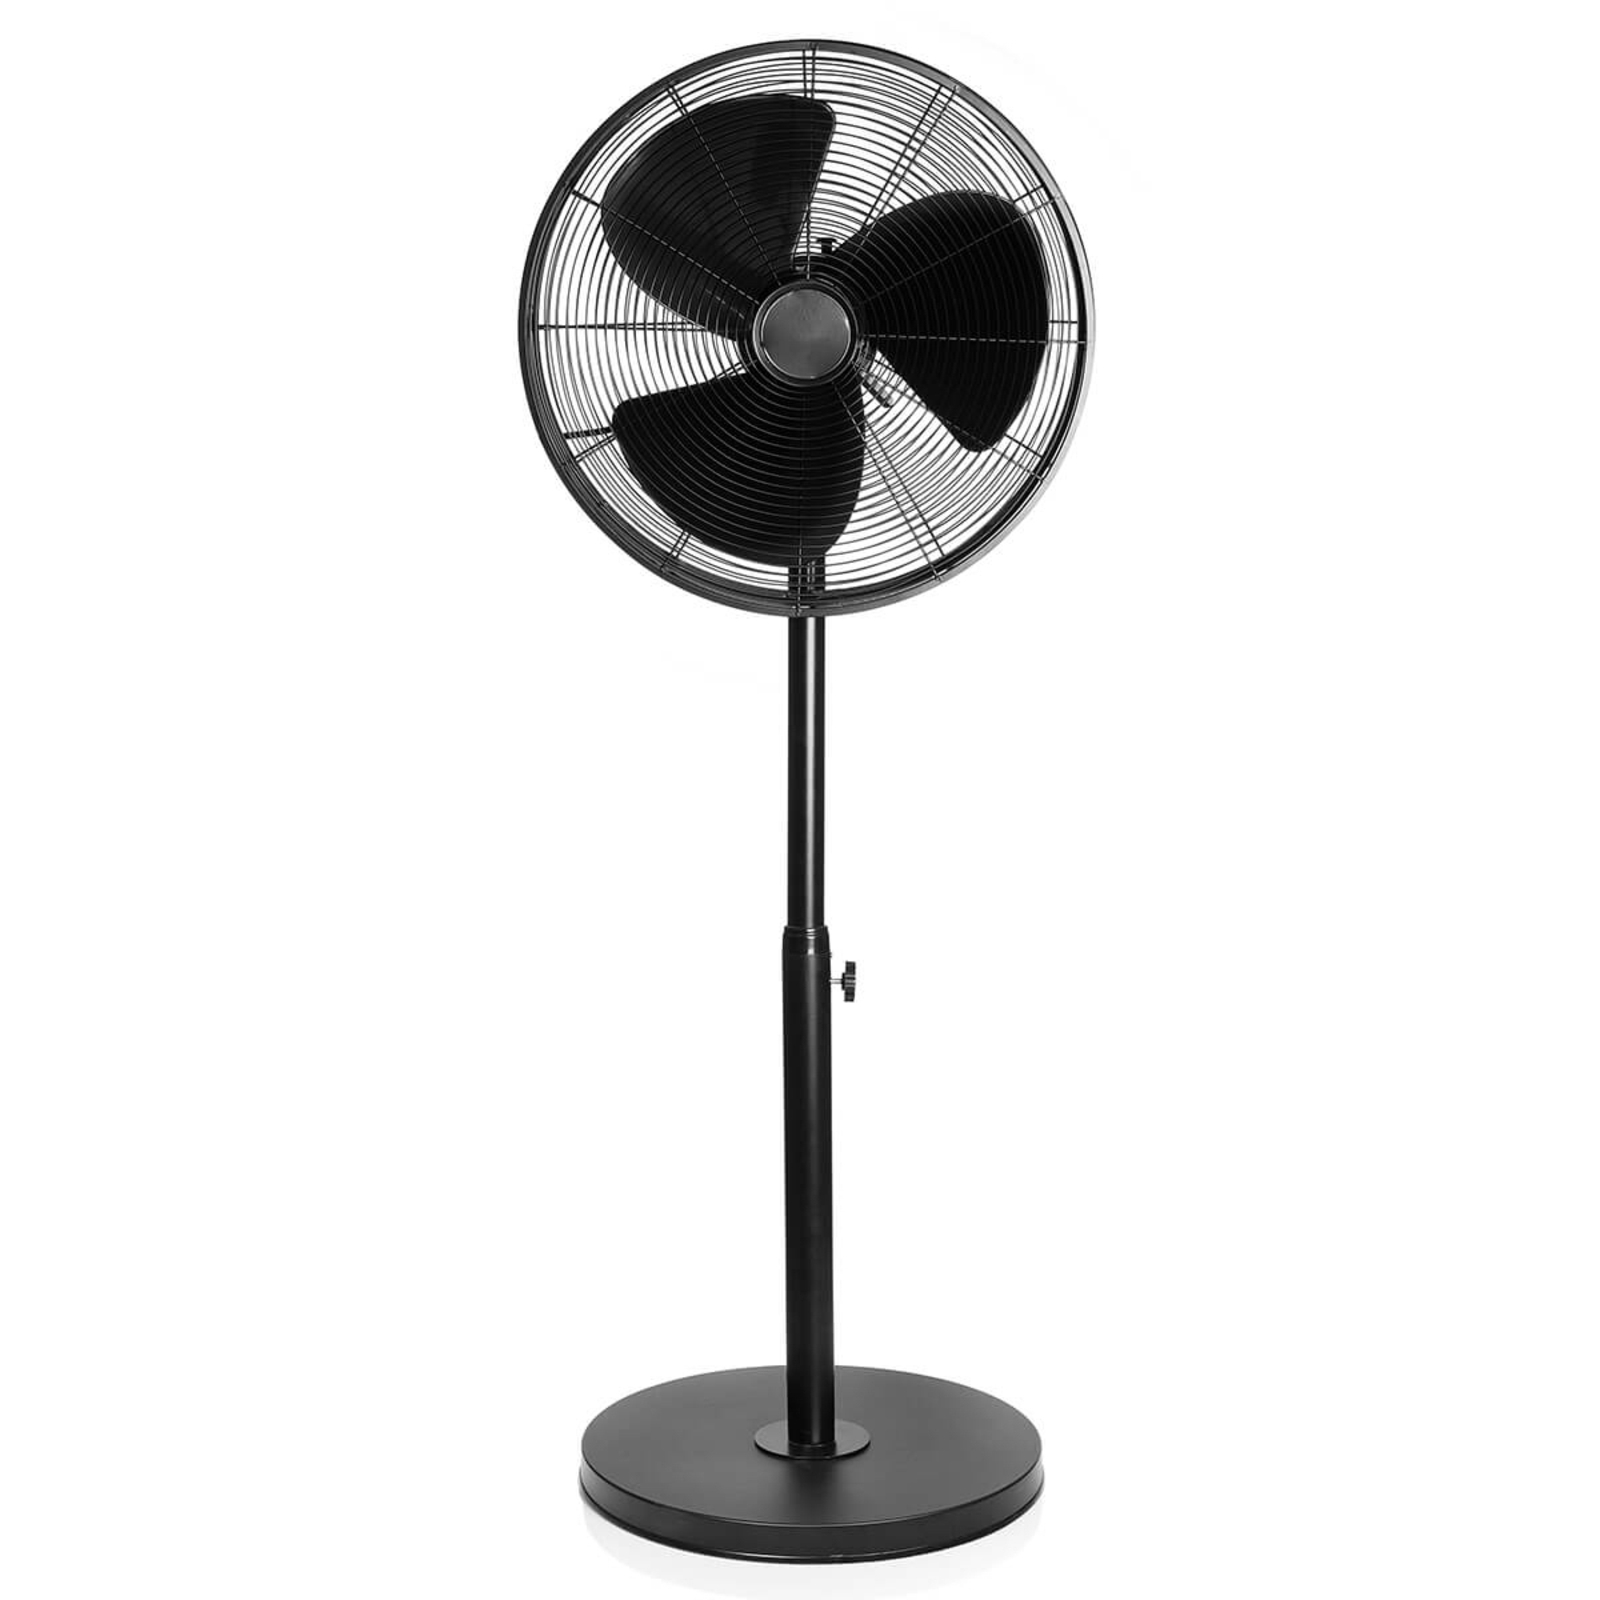 VE5929 modern pedestal fan in black